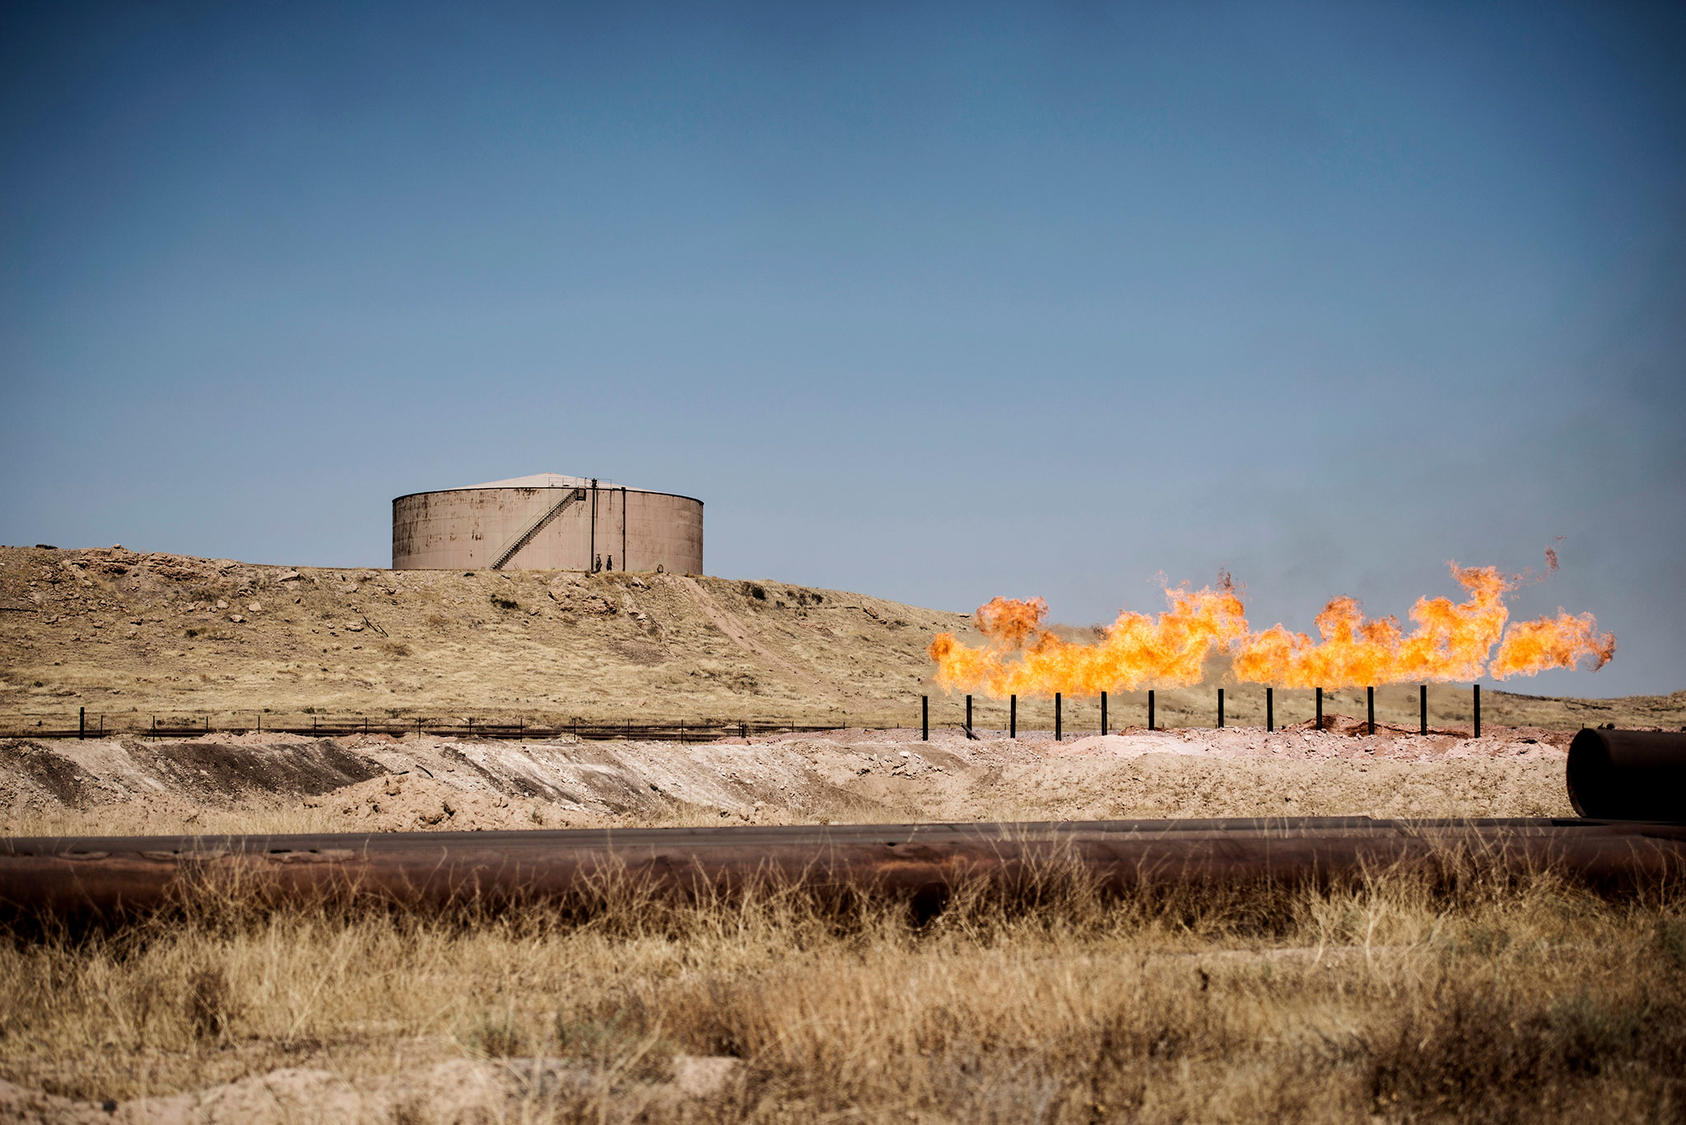 A gas flare burns near storage tanks in the oil fields near Kirkuk, Iraq